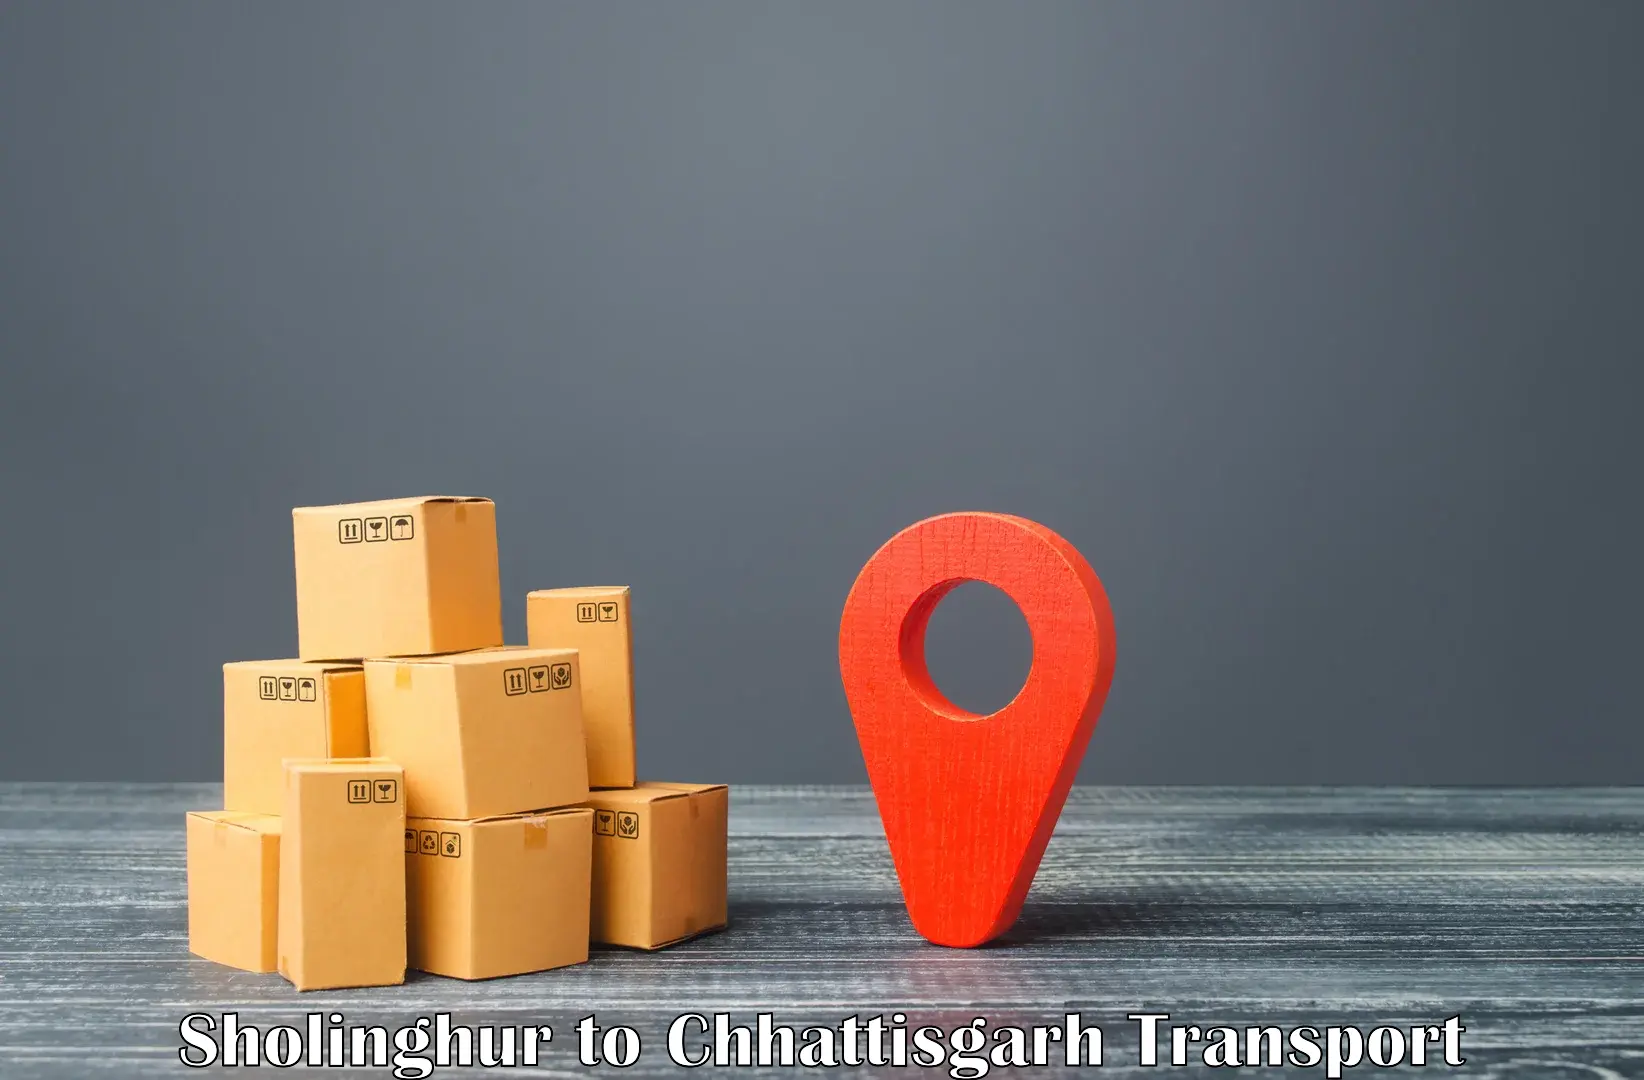 Online transport service Sholinghur to Jagdalpur